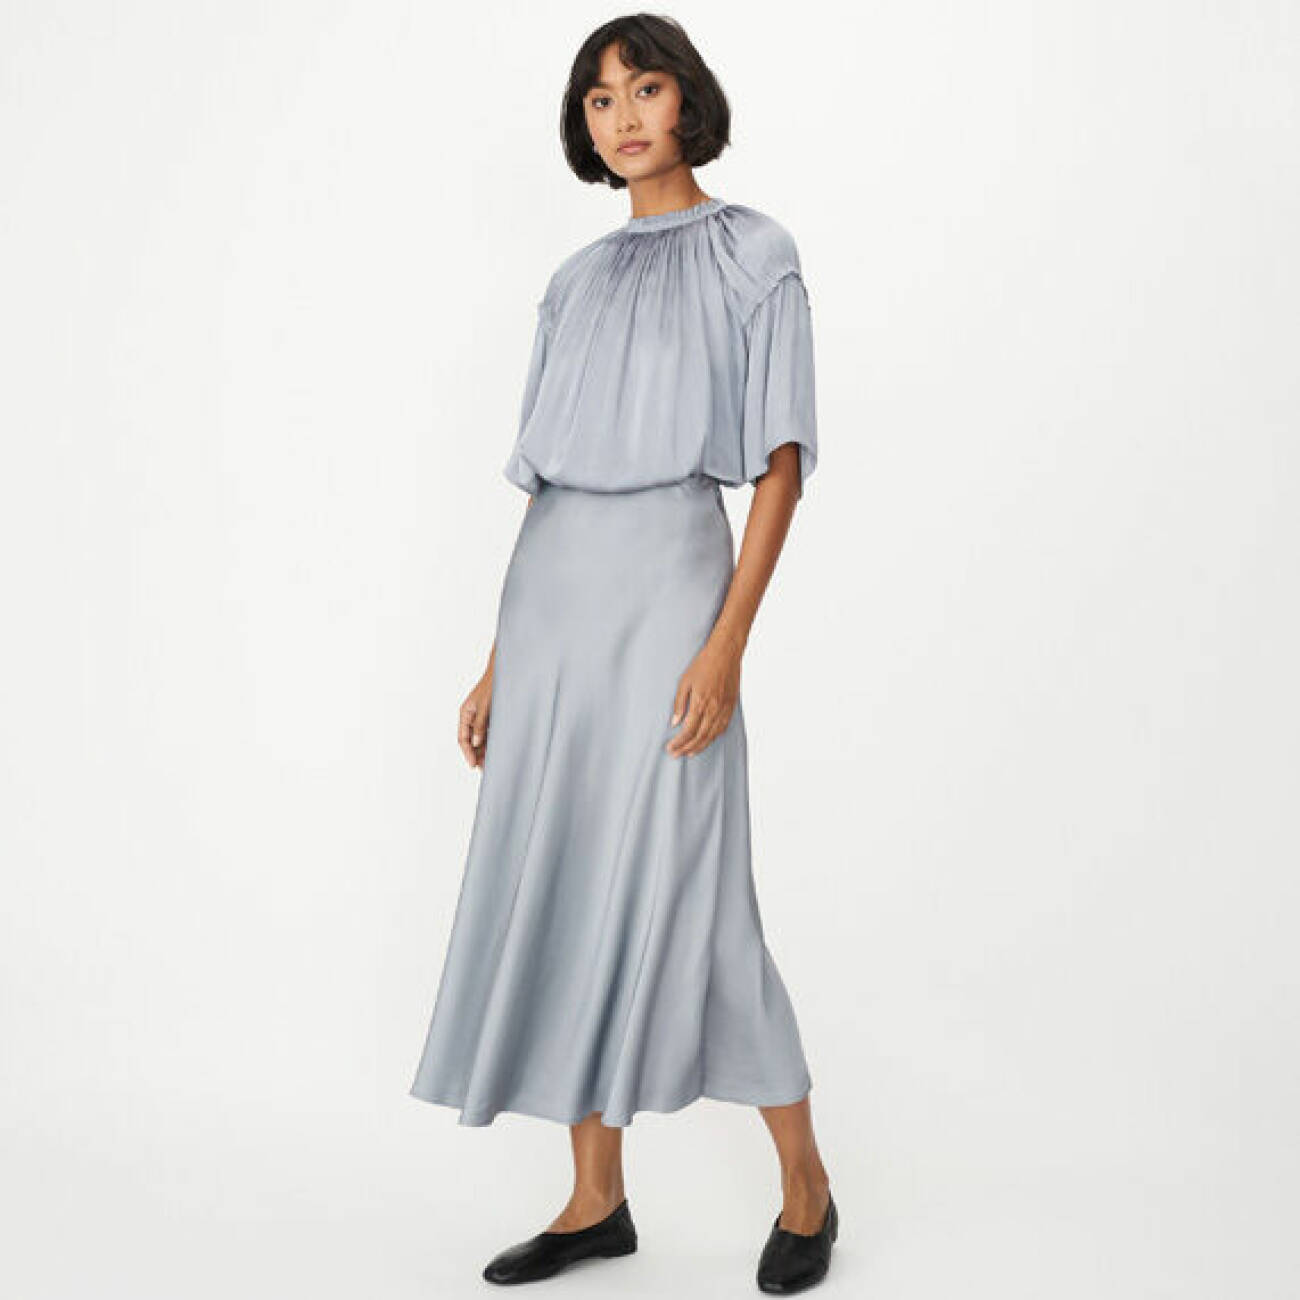 Outfit jul och nyår 2021: ljusblått satinset med blus och kjol från Wera